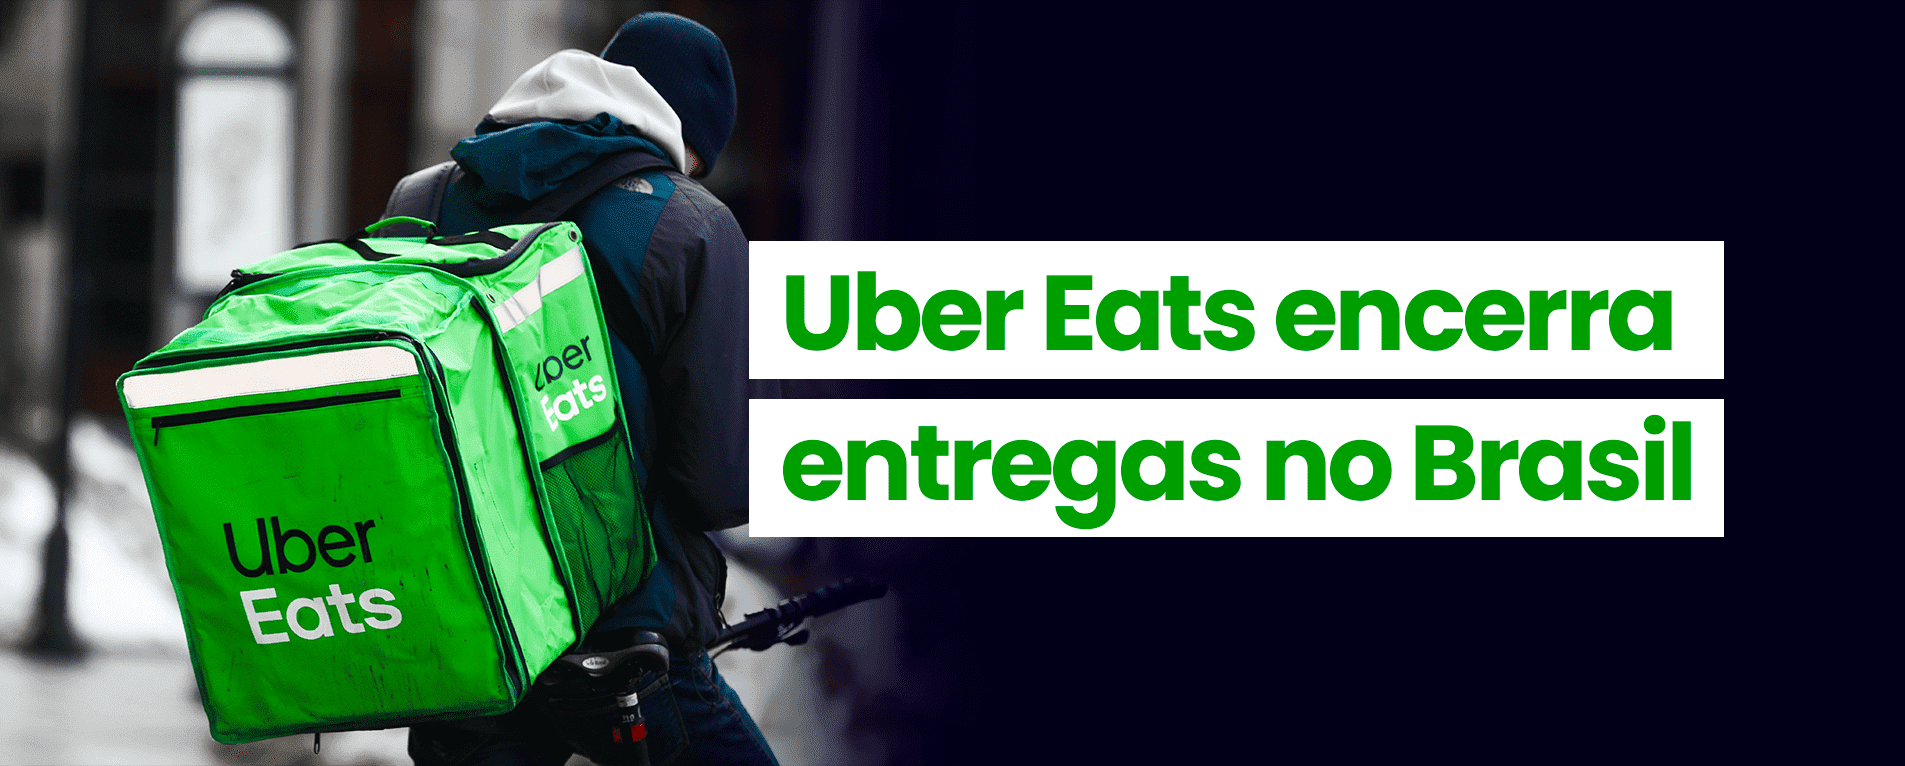 Uber Eats Encerrará Entregas para Restaurantes no Brasil